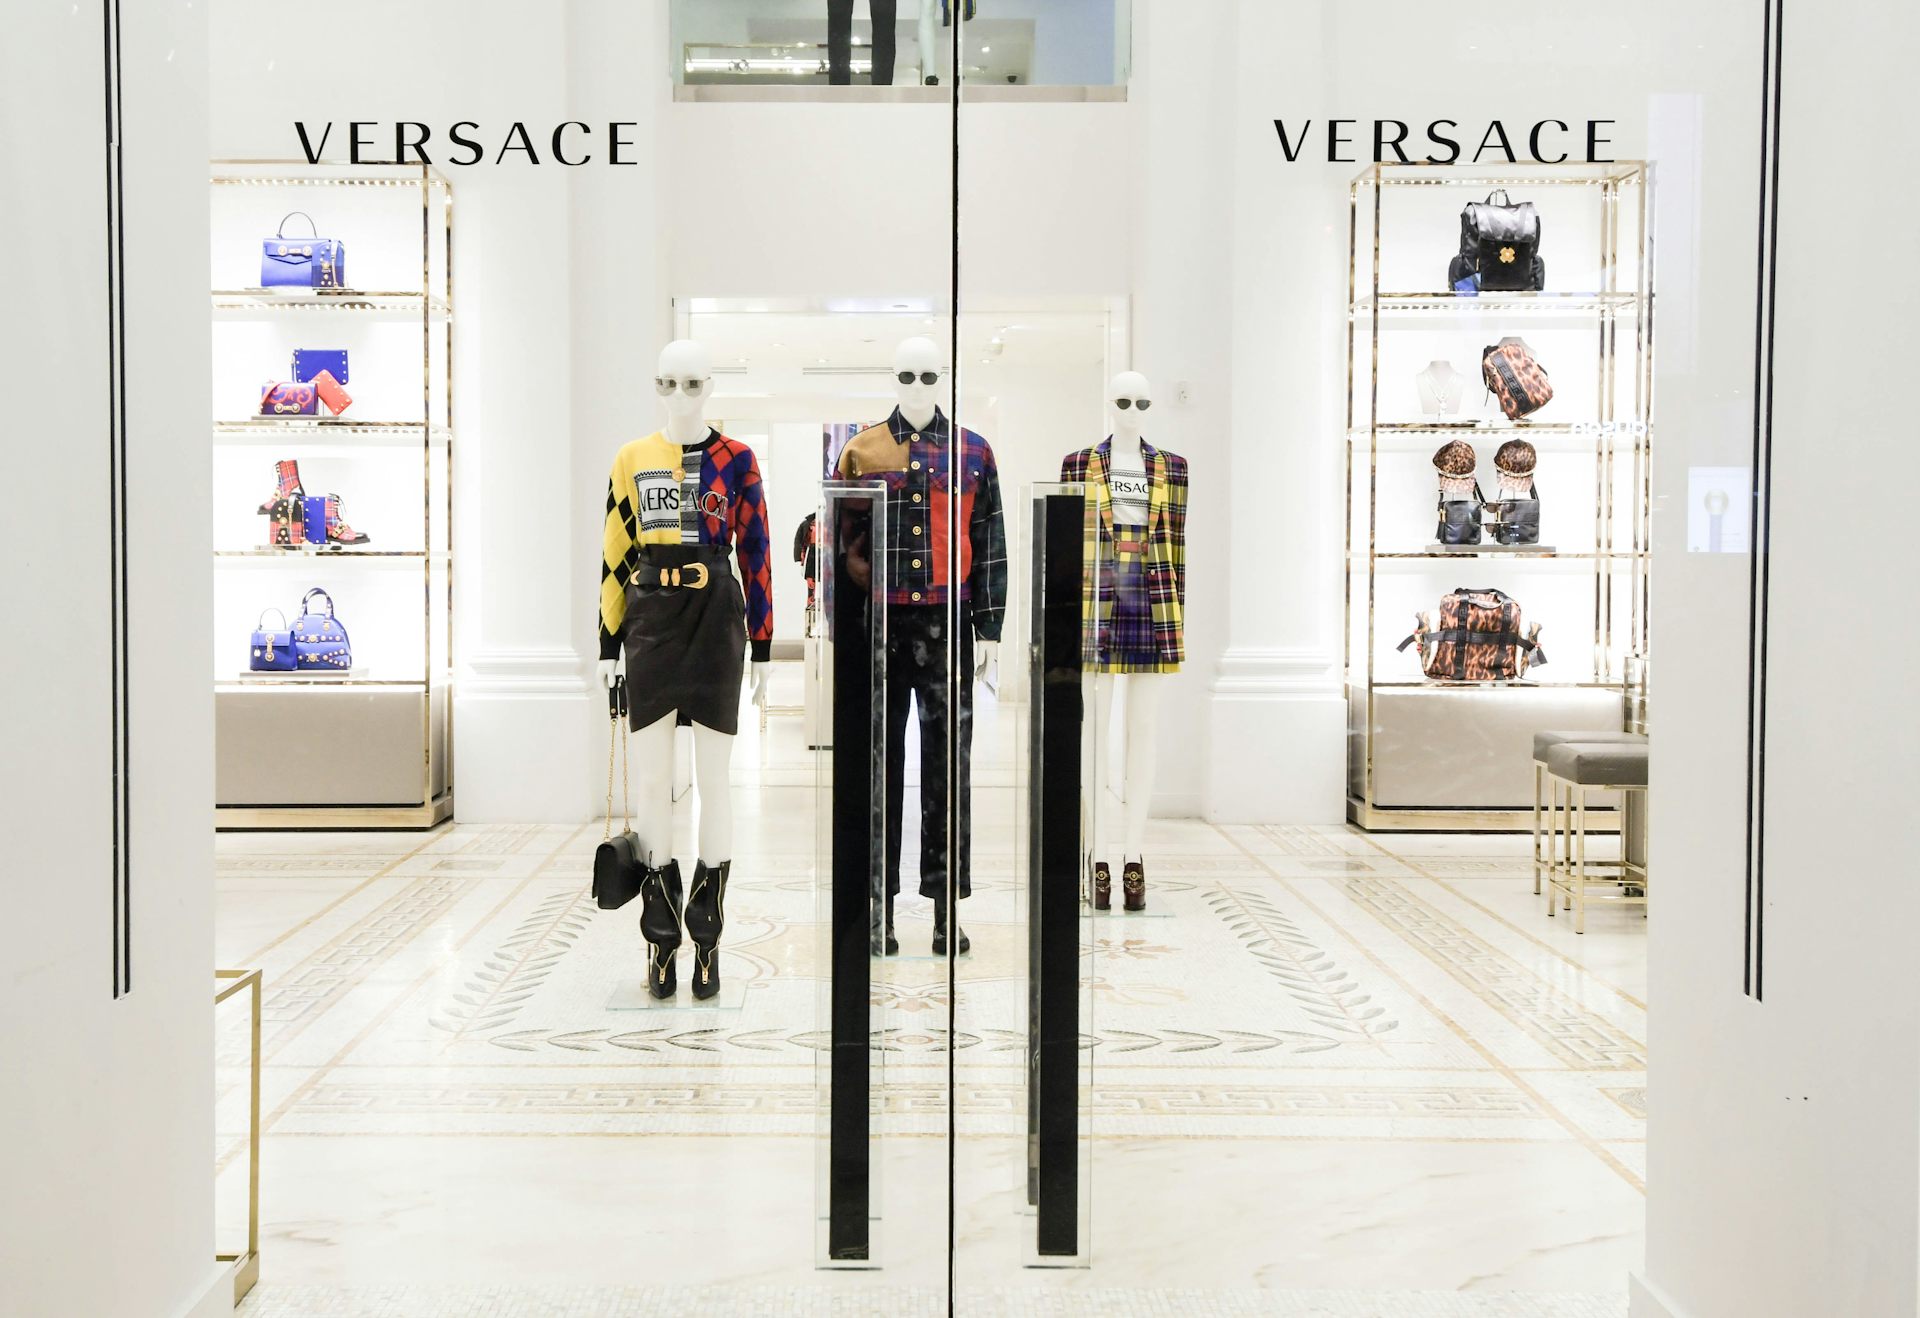 Versace acquisition: Michael Kors 